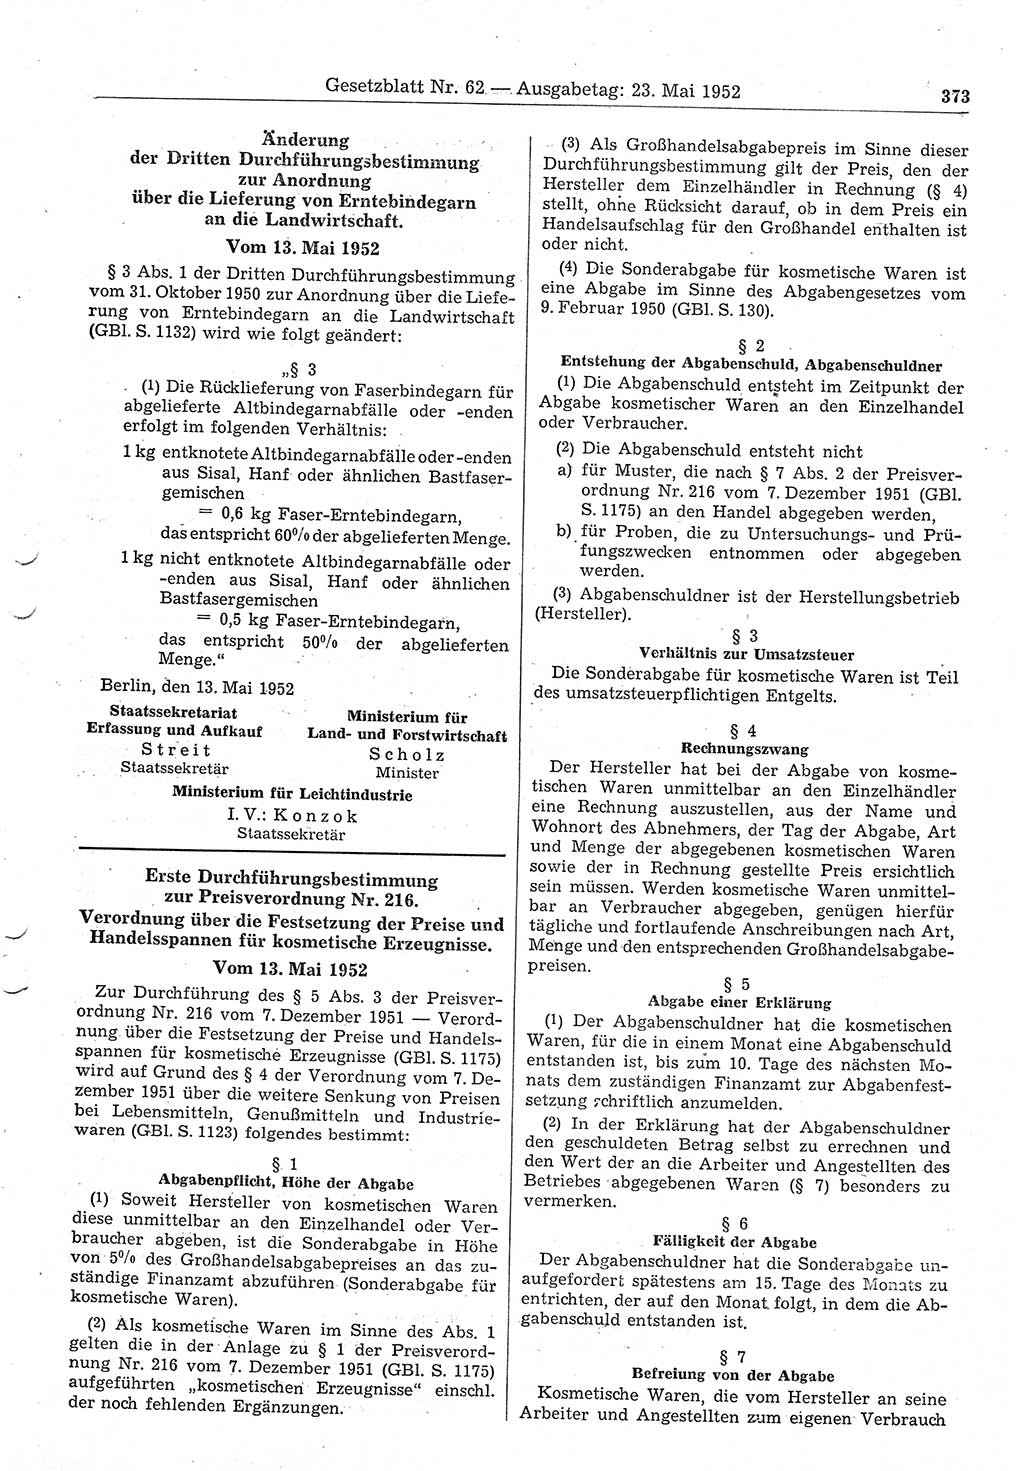 Gesetzblatt (GBl.) der Deutschen Demokratischen Republik (DDR) 1952, Seite 373 (GBl. DDR 1952, S. 373)